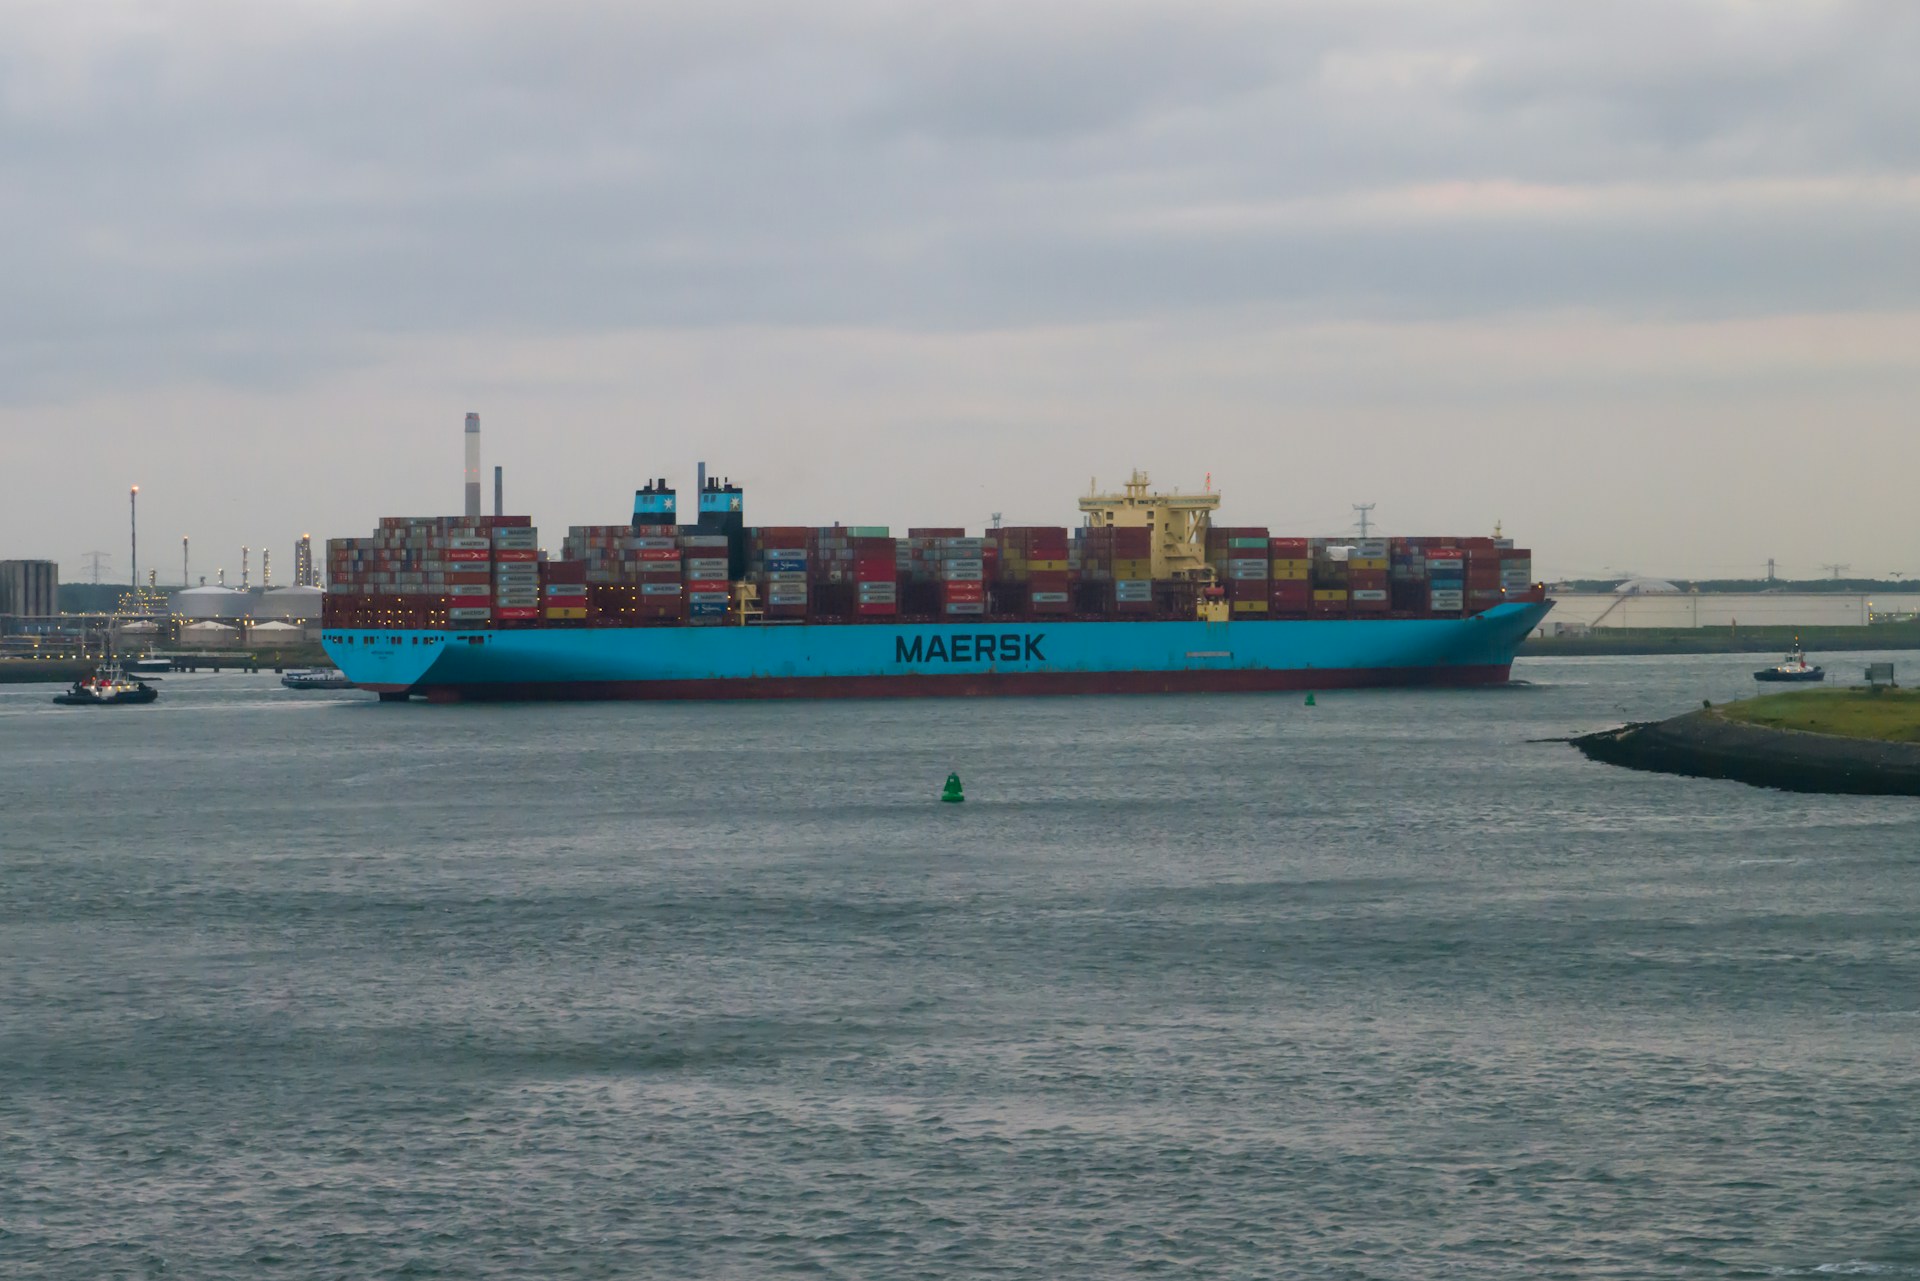  Port Sudan Bookings Resumed by Maersk